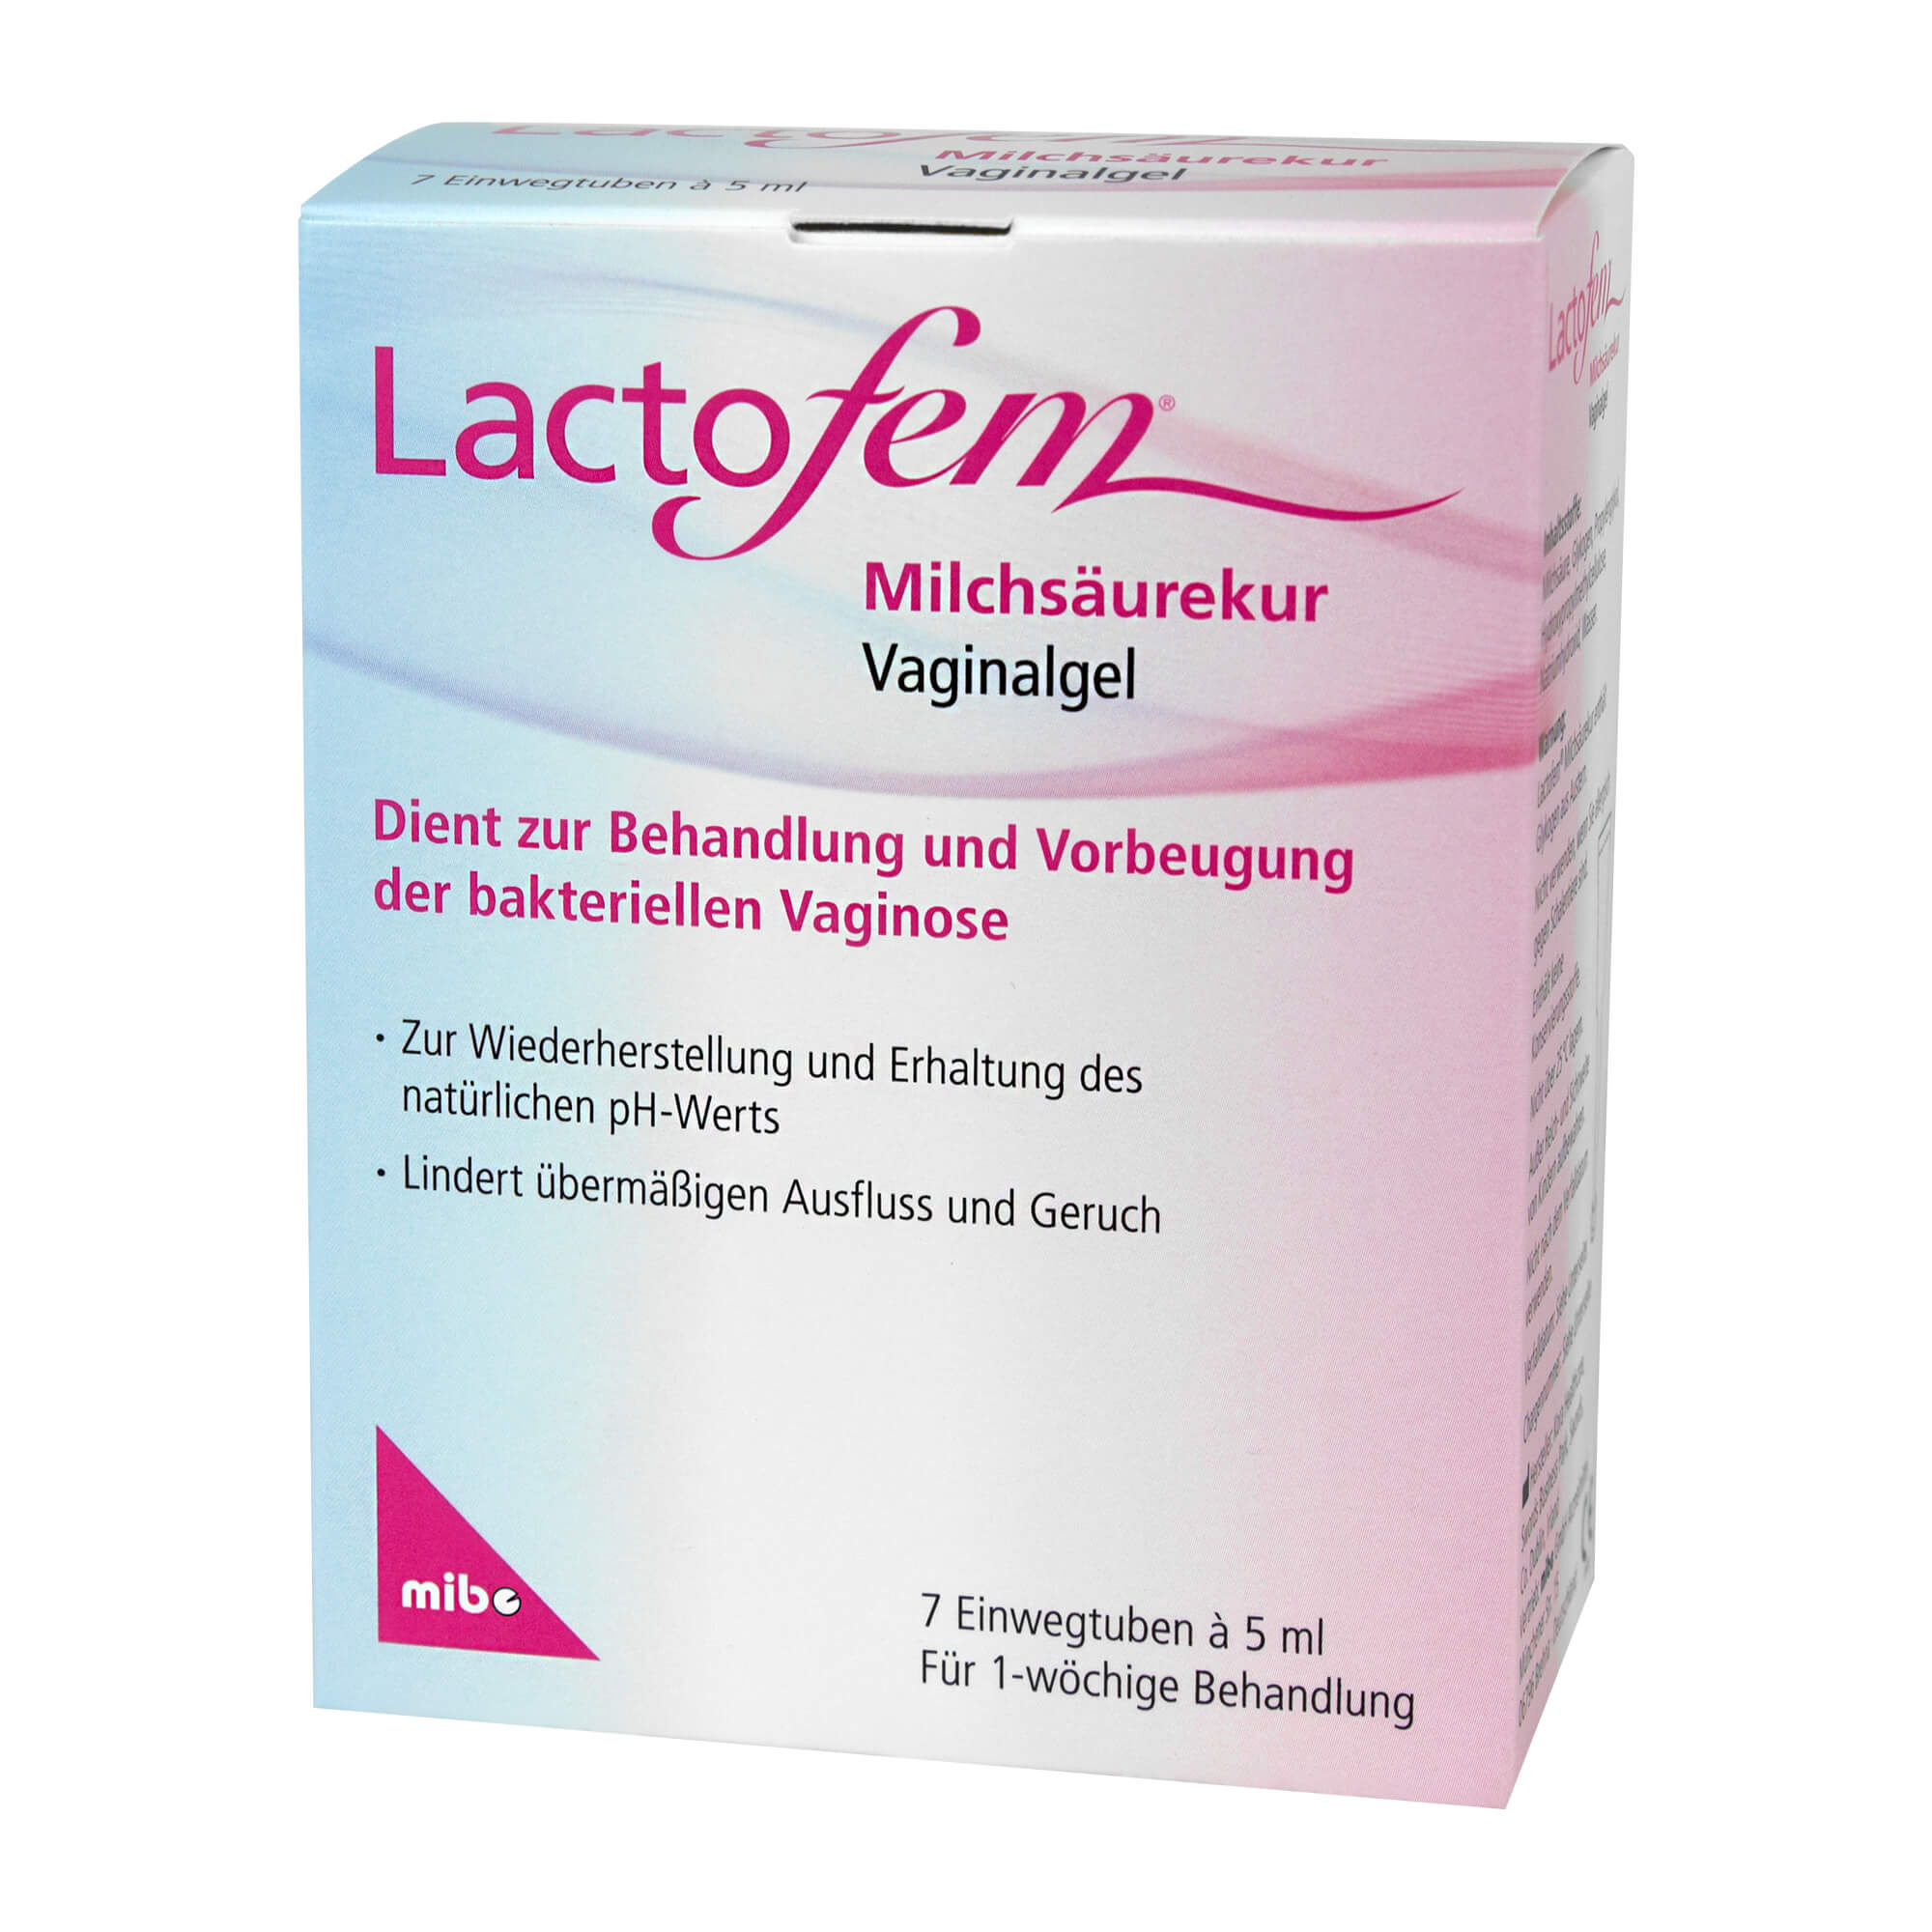 Zur unterstützenden Behandlung und Vorbeugung der bakteriellen Vaginose.